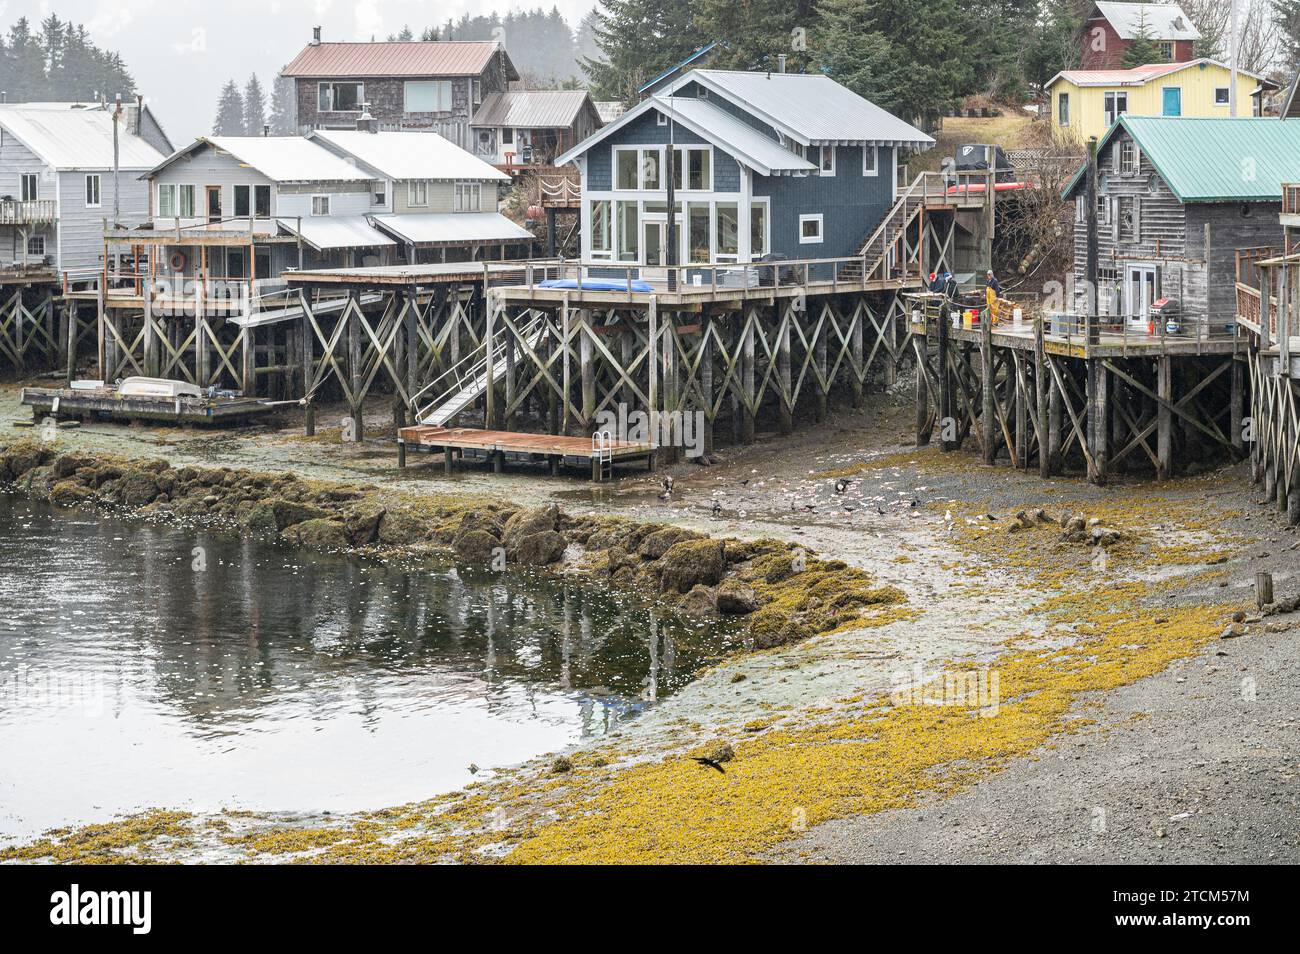 Riverside Häuser mit Blick auf den Slough von Seldovia mit Fischern, die ihren Fang säubern und Weißkopfseeadlern, die die Überreste fressen, Seldovia, Alaska, USA Stockfoto